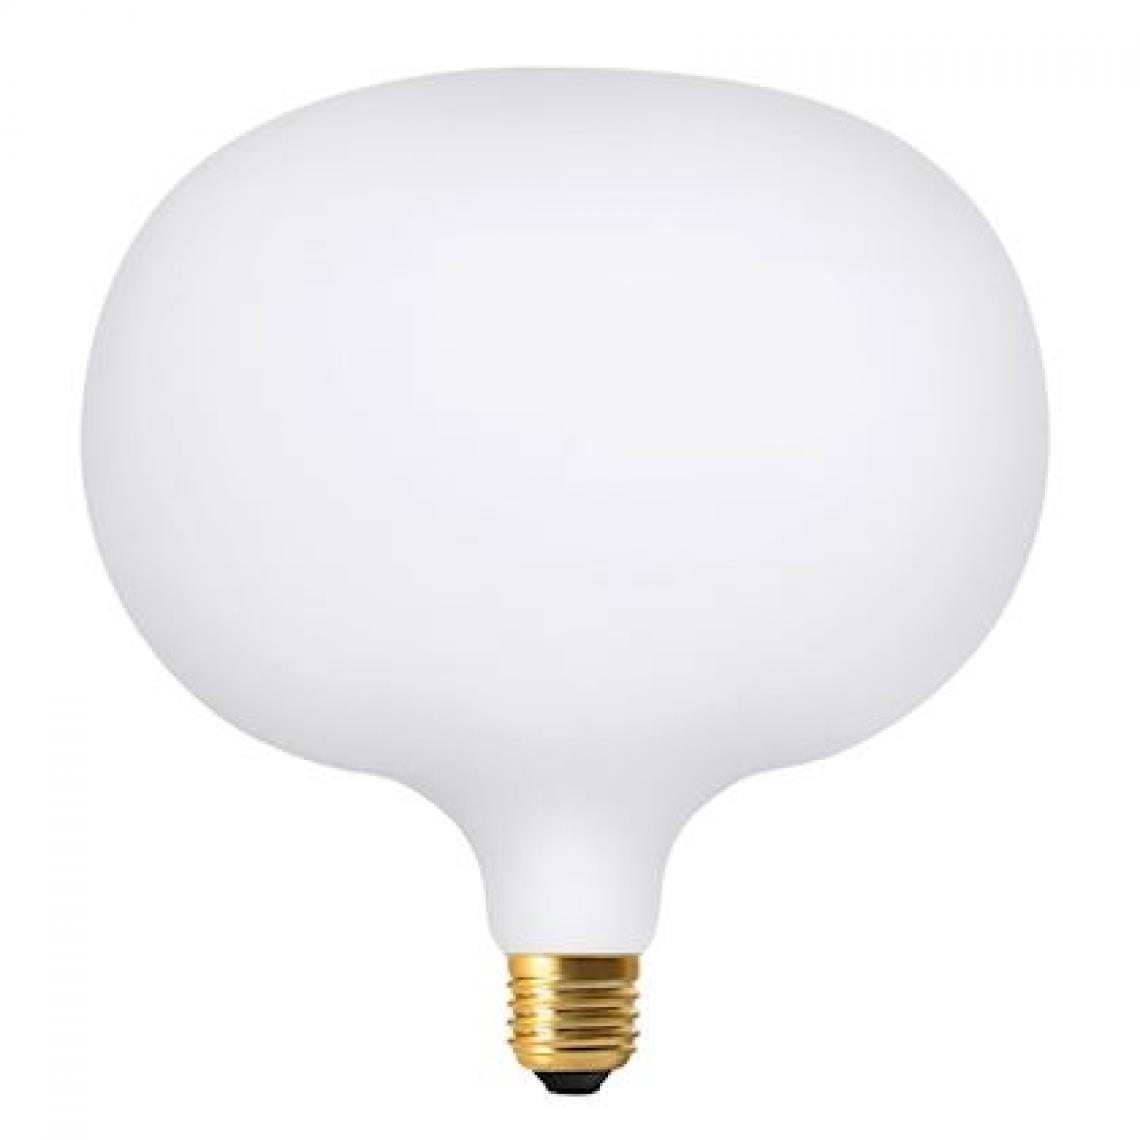 Aric - ampoule à led - aric deco cobble - e27 - 4w - blanc - aric 20113 - Ampoules LED